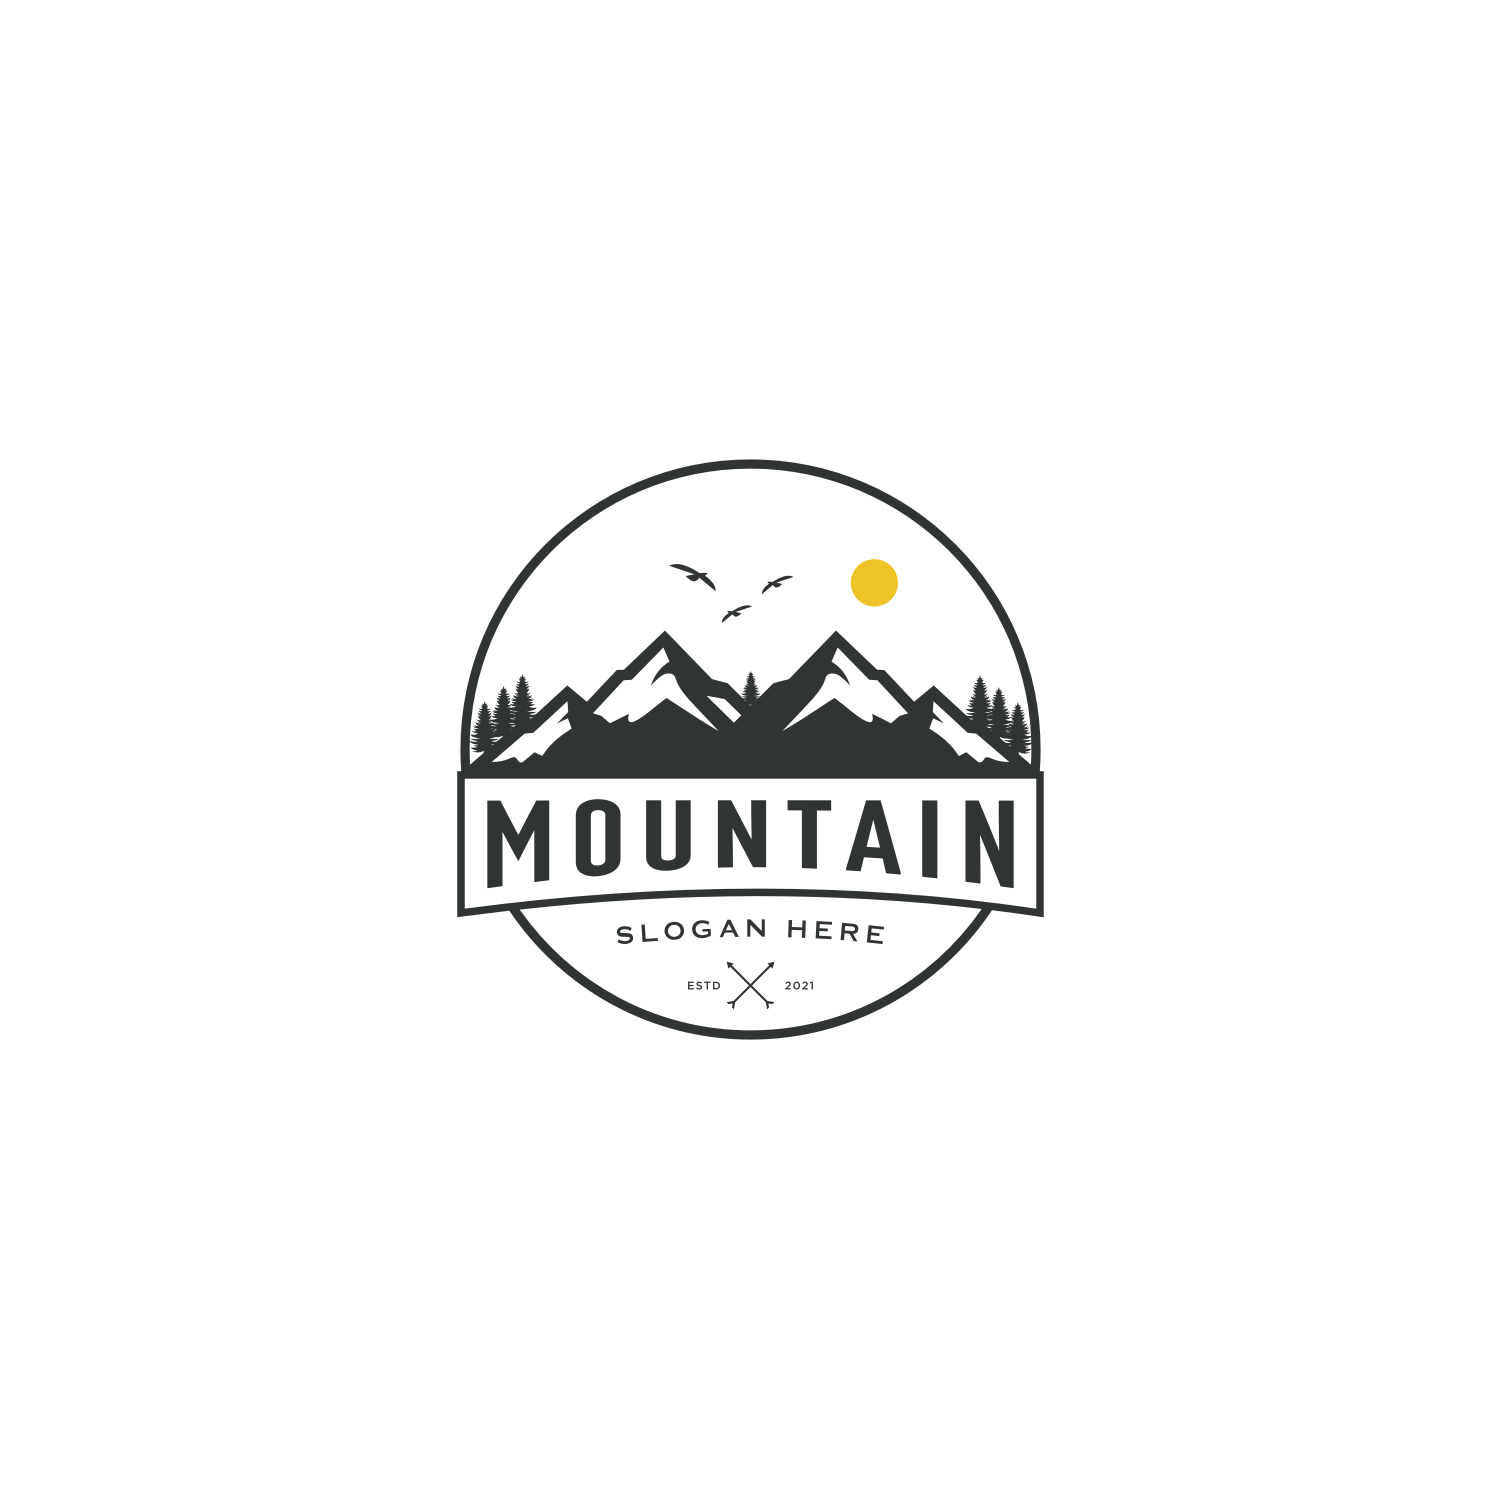 Mountain Logo Vector Design cover image.